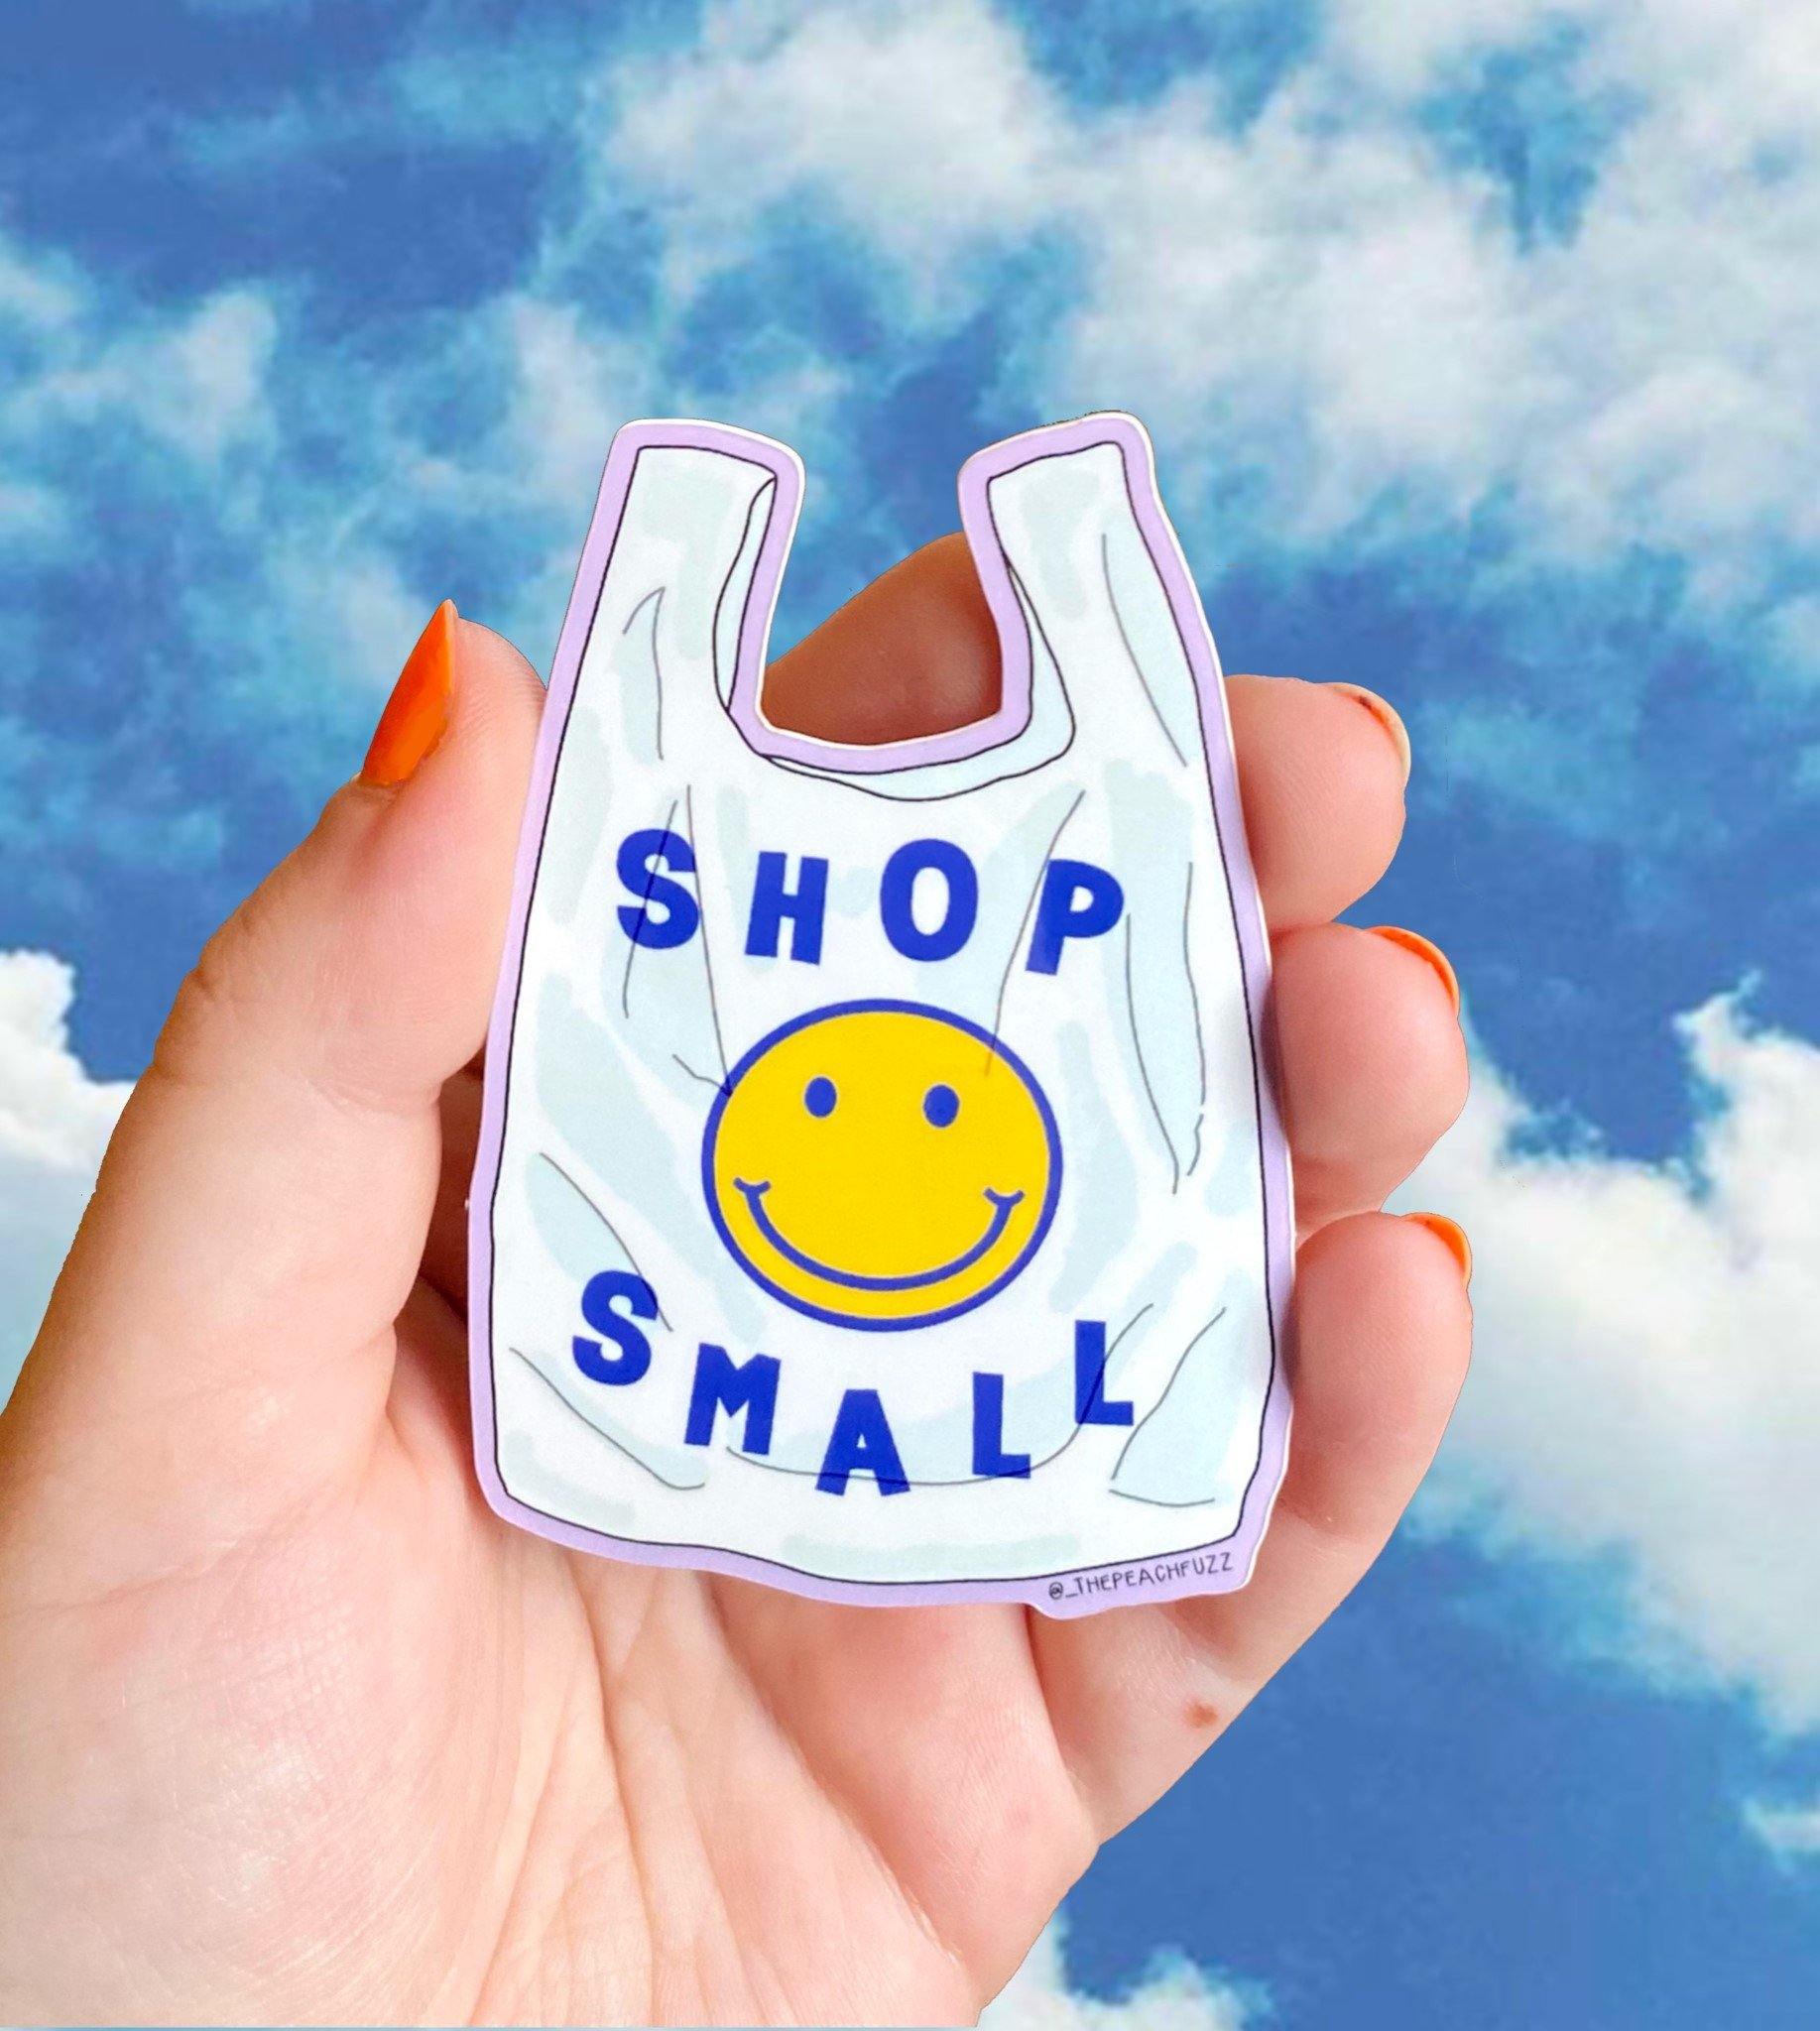 Shop Small Sticker - The Peach Fuzz